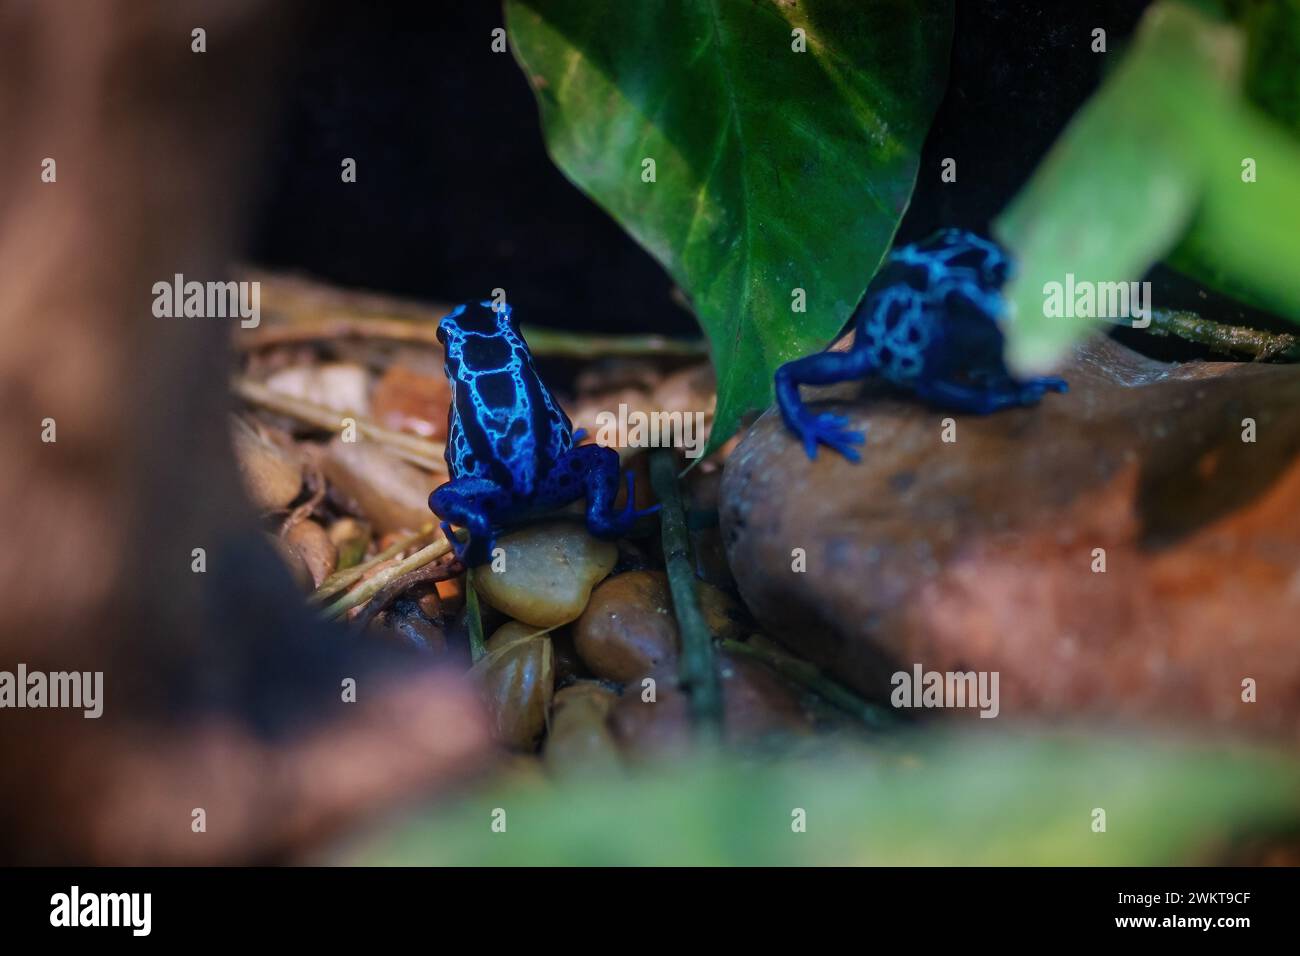 Blue Dyeing Poison Dart Frog (Dendrobates tinctorius) Stock Photo